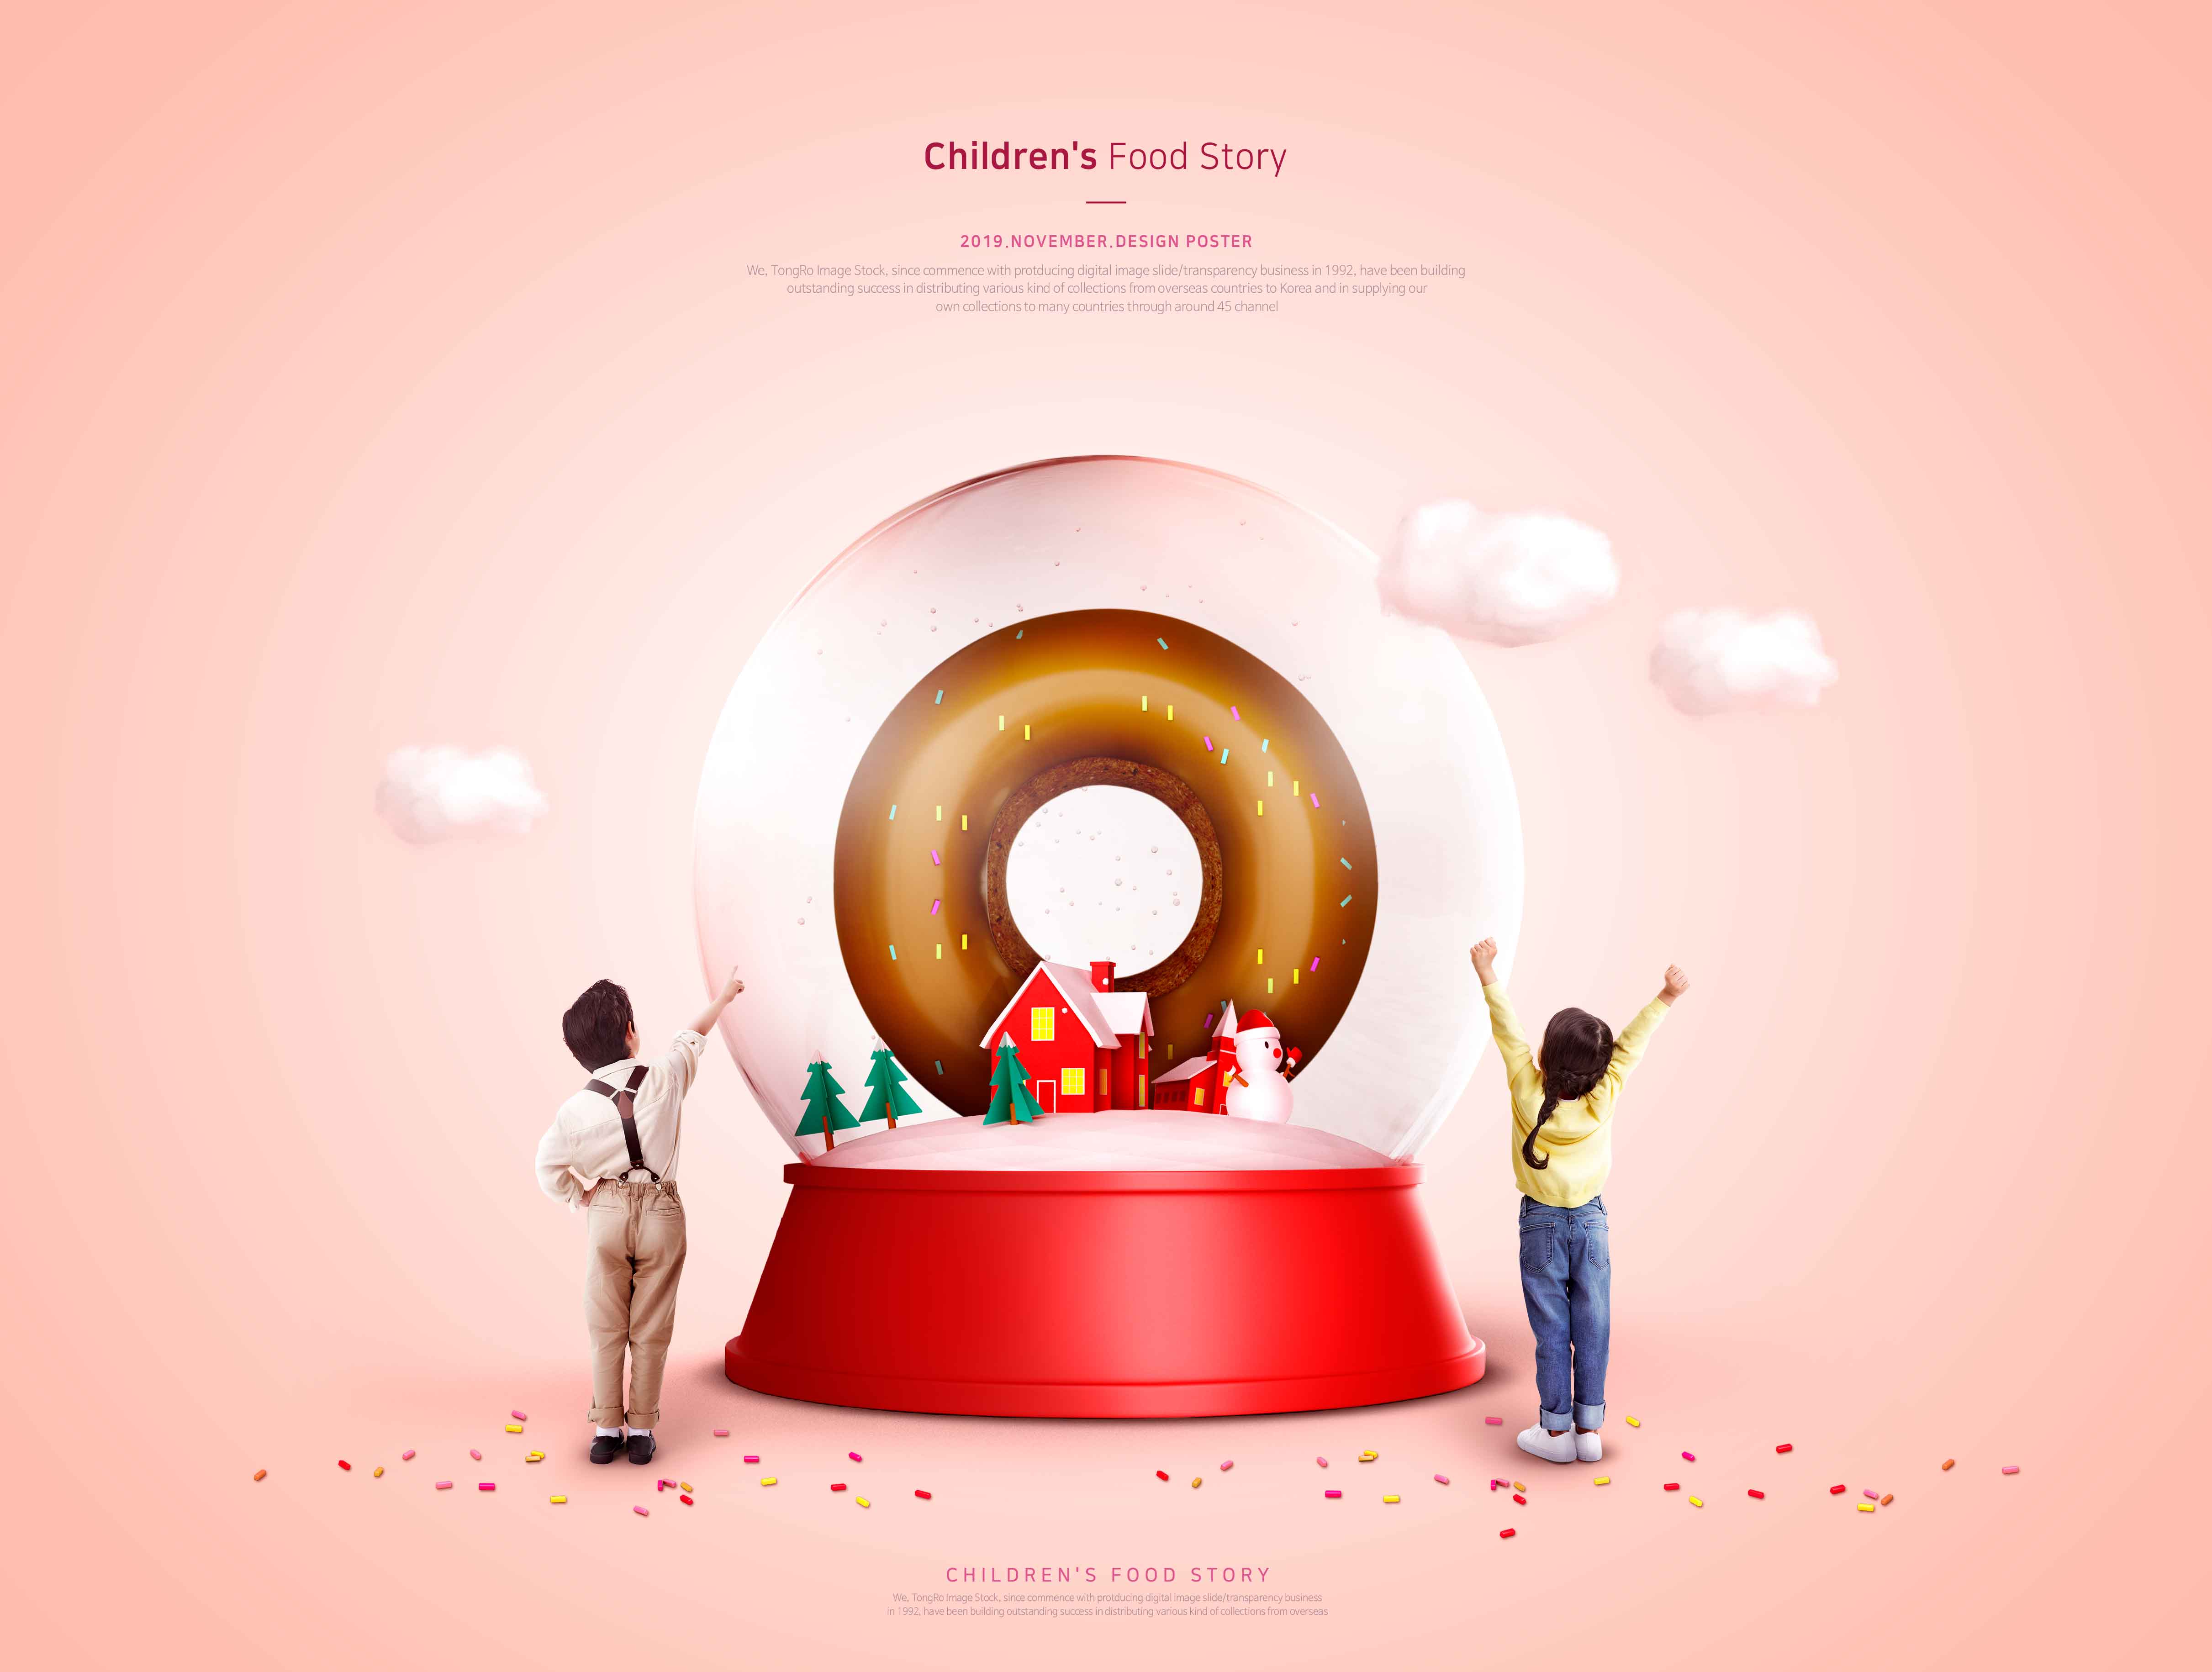 儿童食品故事甜甜圈美食推广海报PSD素材蚂蚁素材精选模板插图